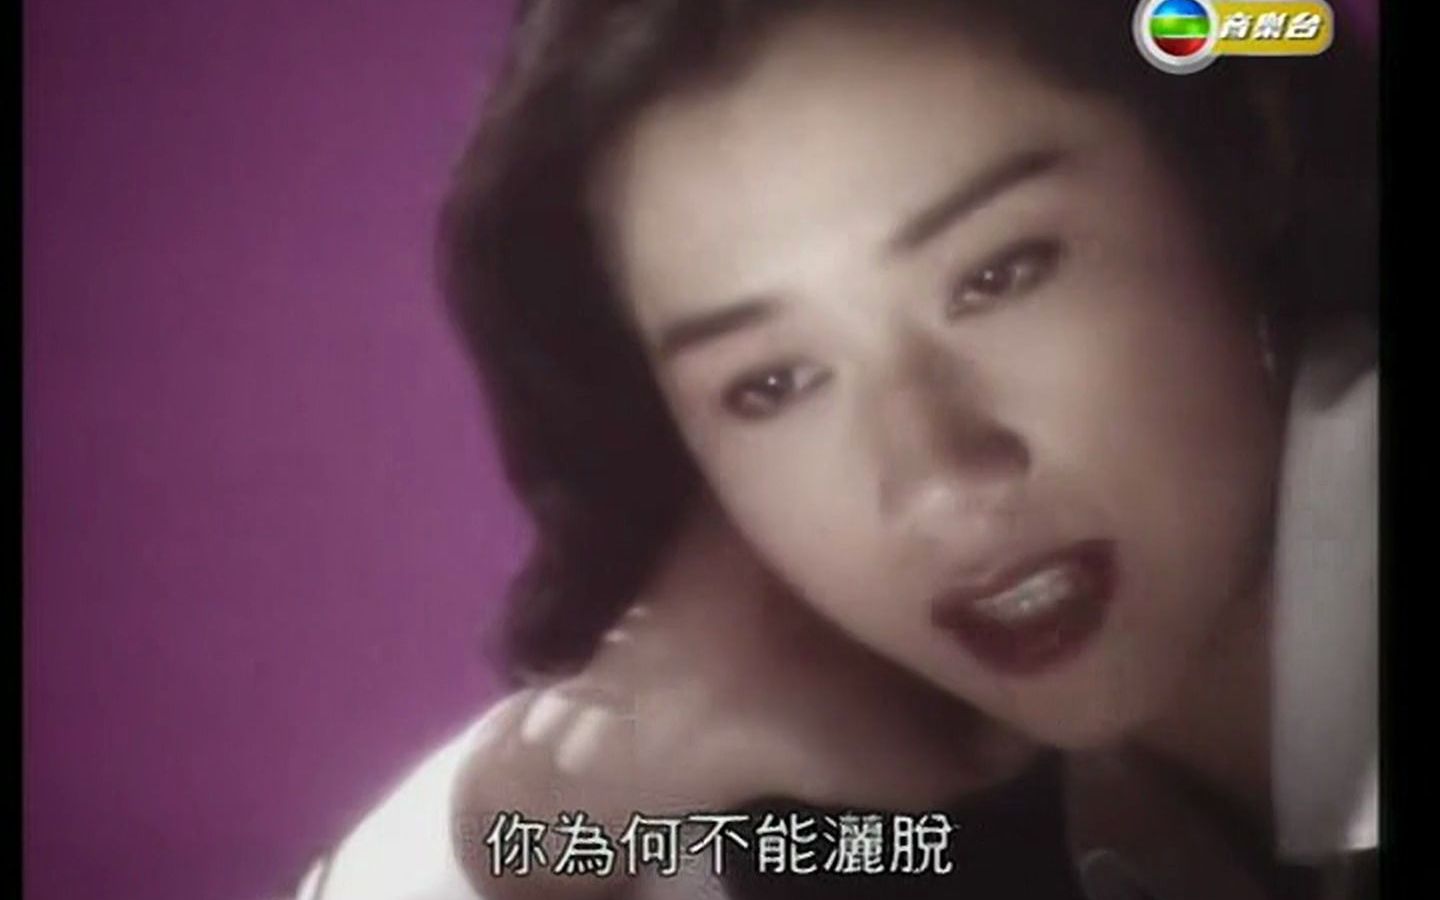 [图]彭家丽《难以抗拒你容颜》粤语版《何故何苦何必》TVB MV